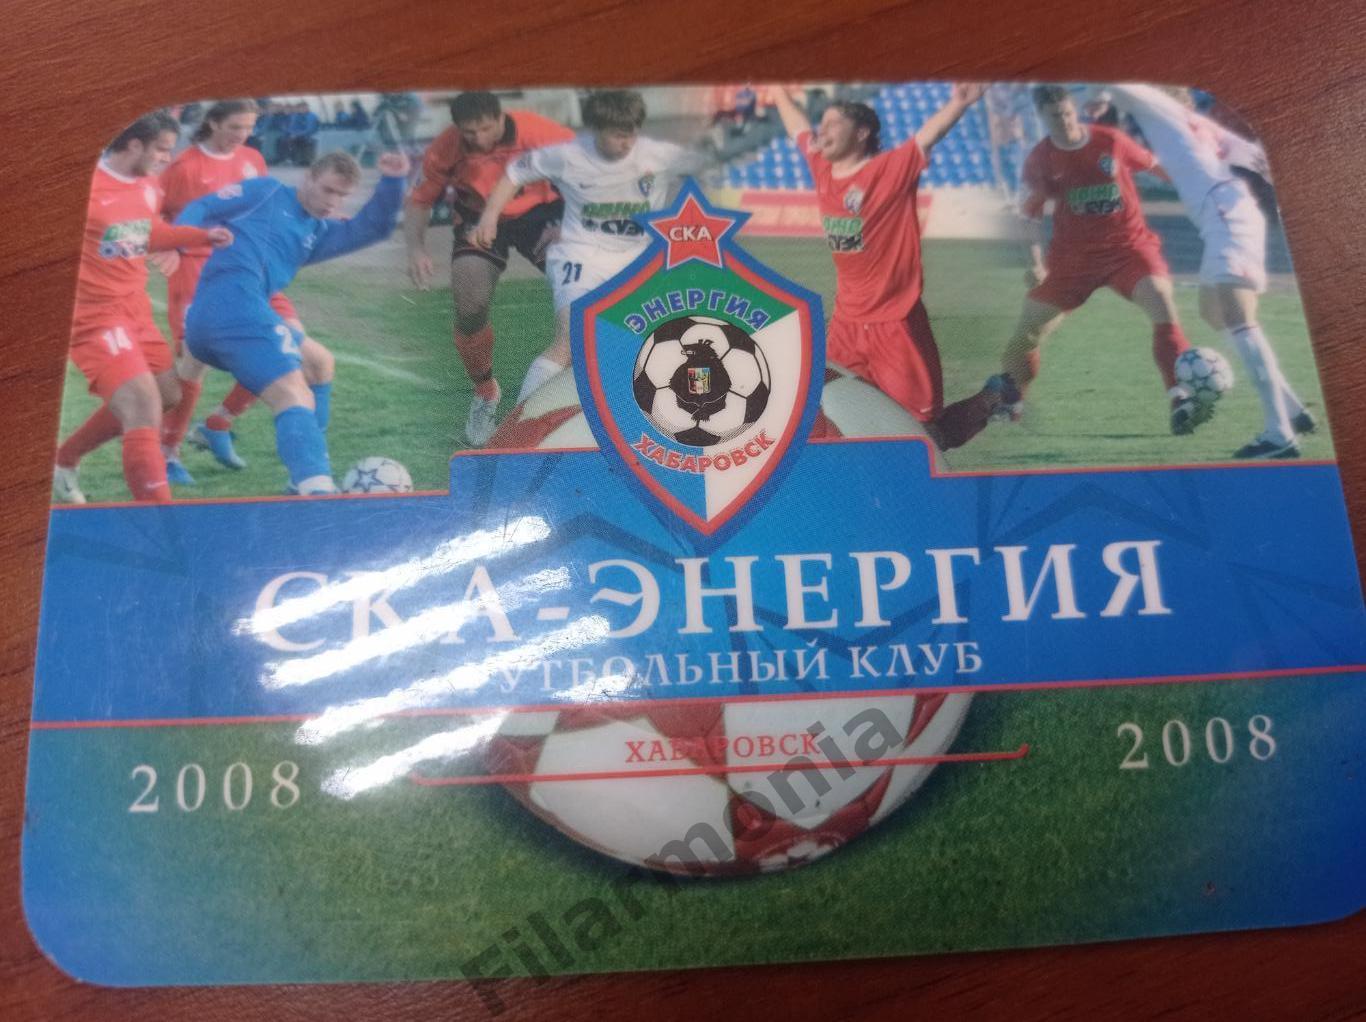 2008 СКА-Энергия Хабаровск календарь игр